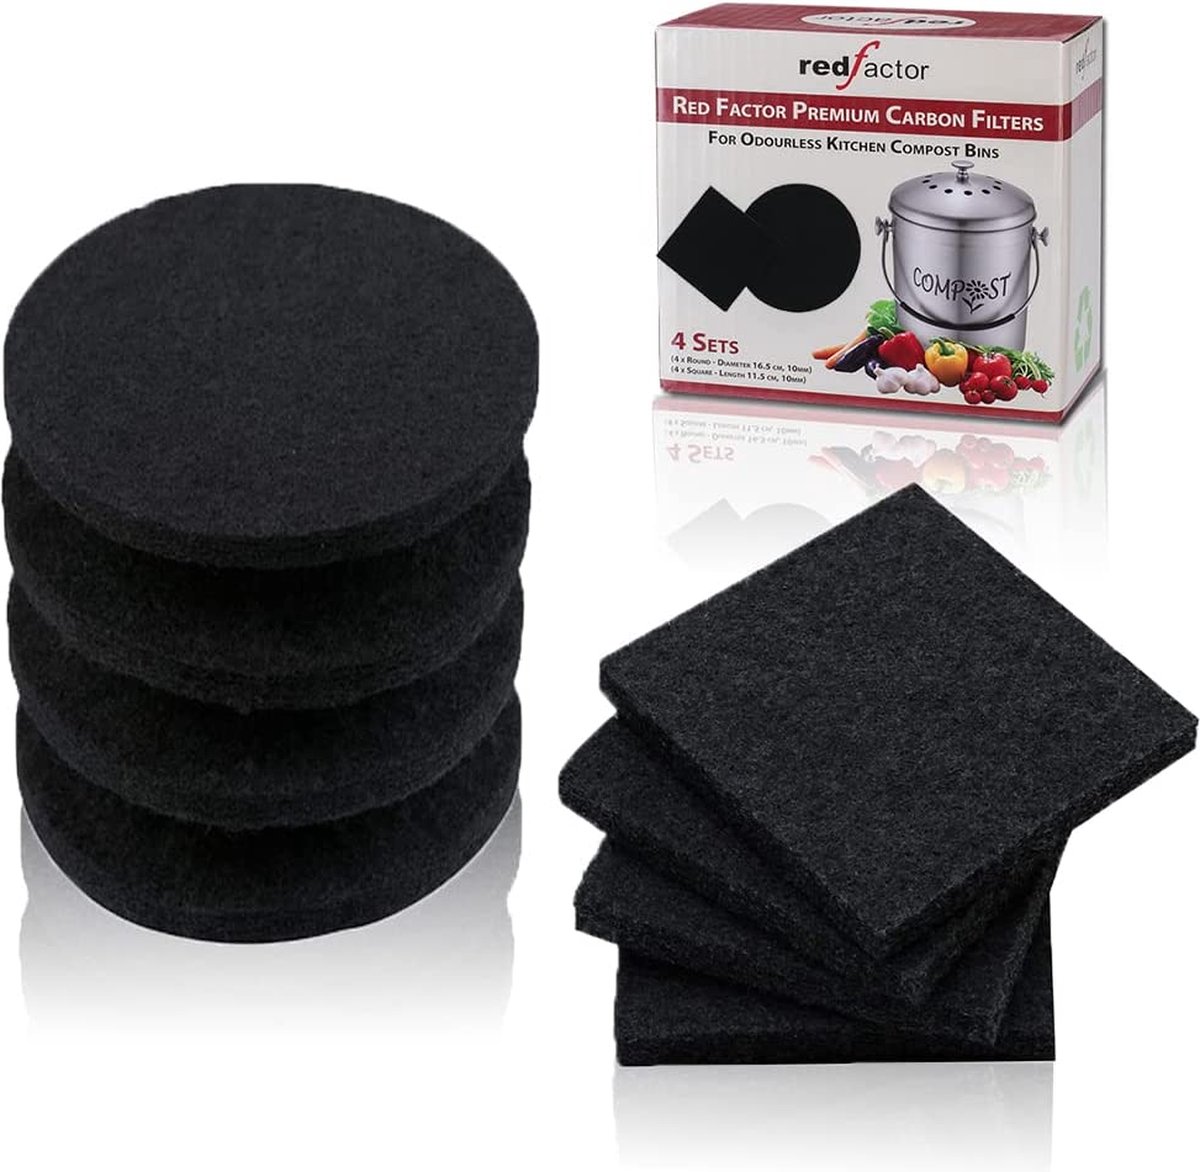 RED FACTOR Extra dikke actieve koolkoolstoffilters voor geurloze keukencompostbakken - Pack van 8 (4 rond, 4 vierkant)